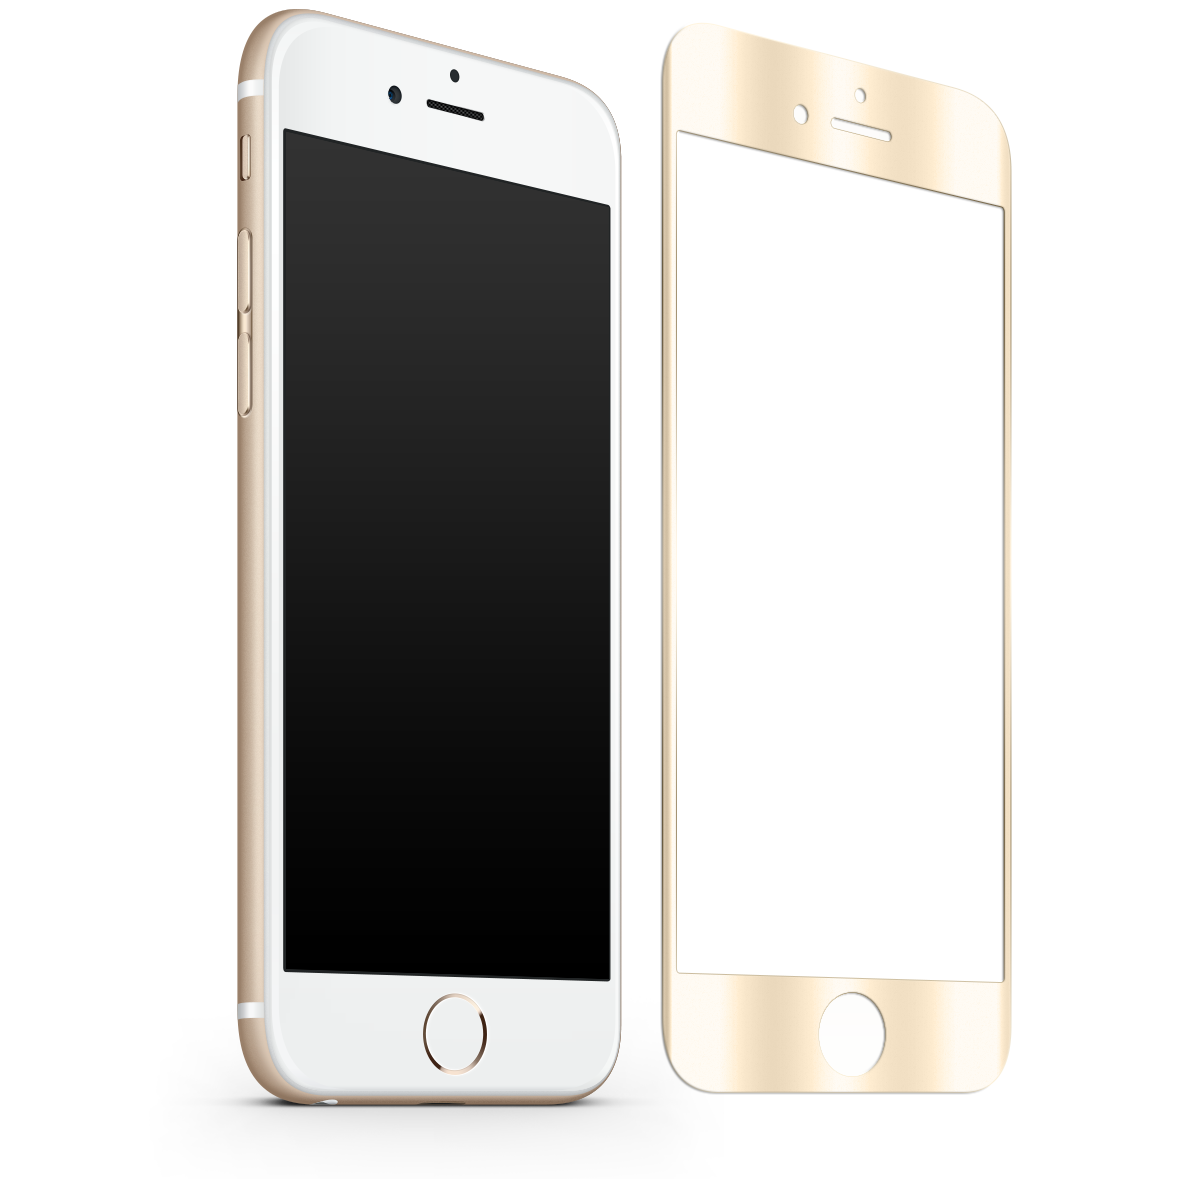 apple iphone 6 golden